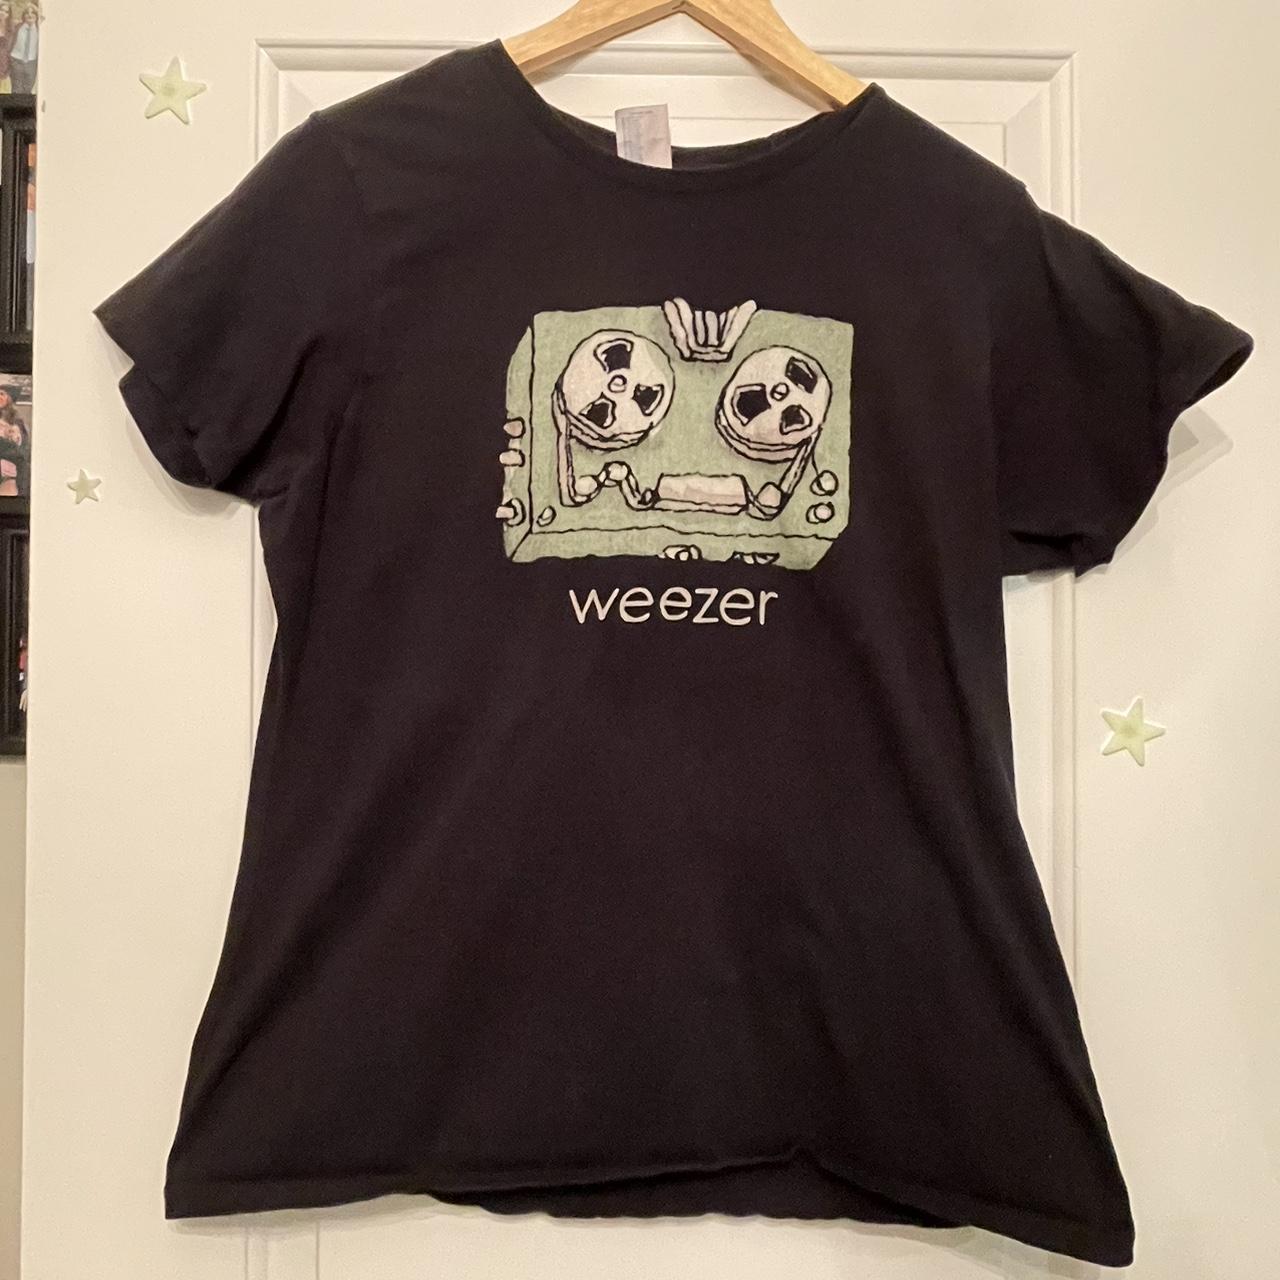 Large weezer shirt (shrunk by being worn so much) - Depop